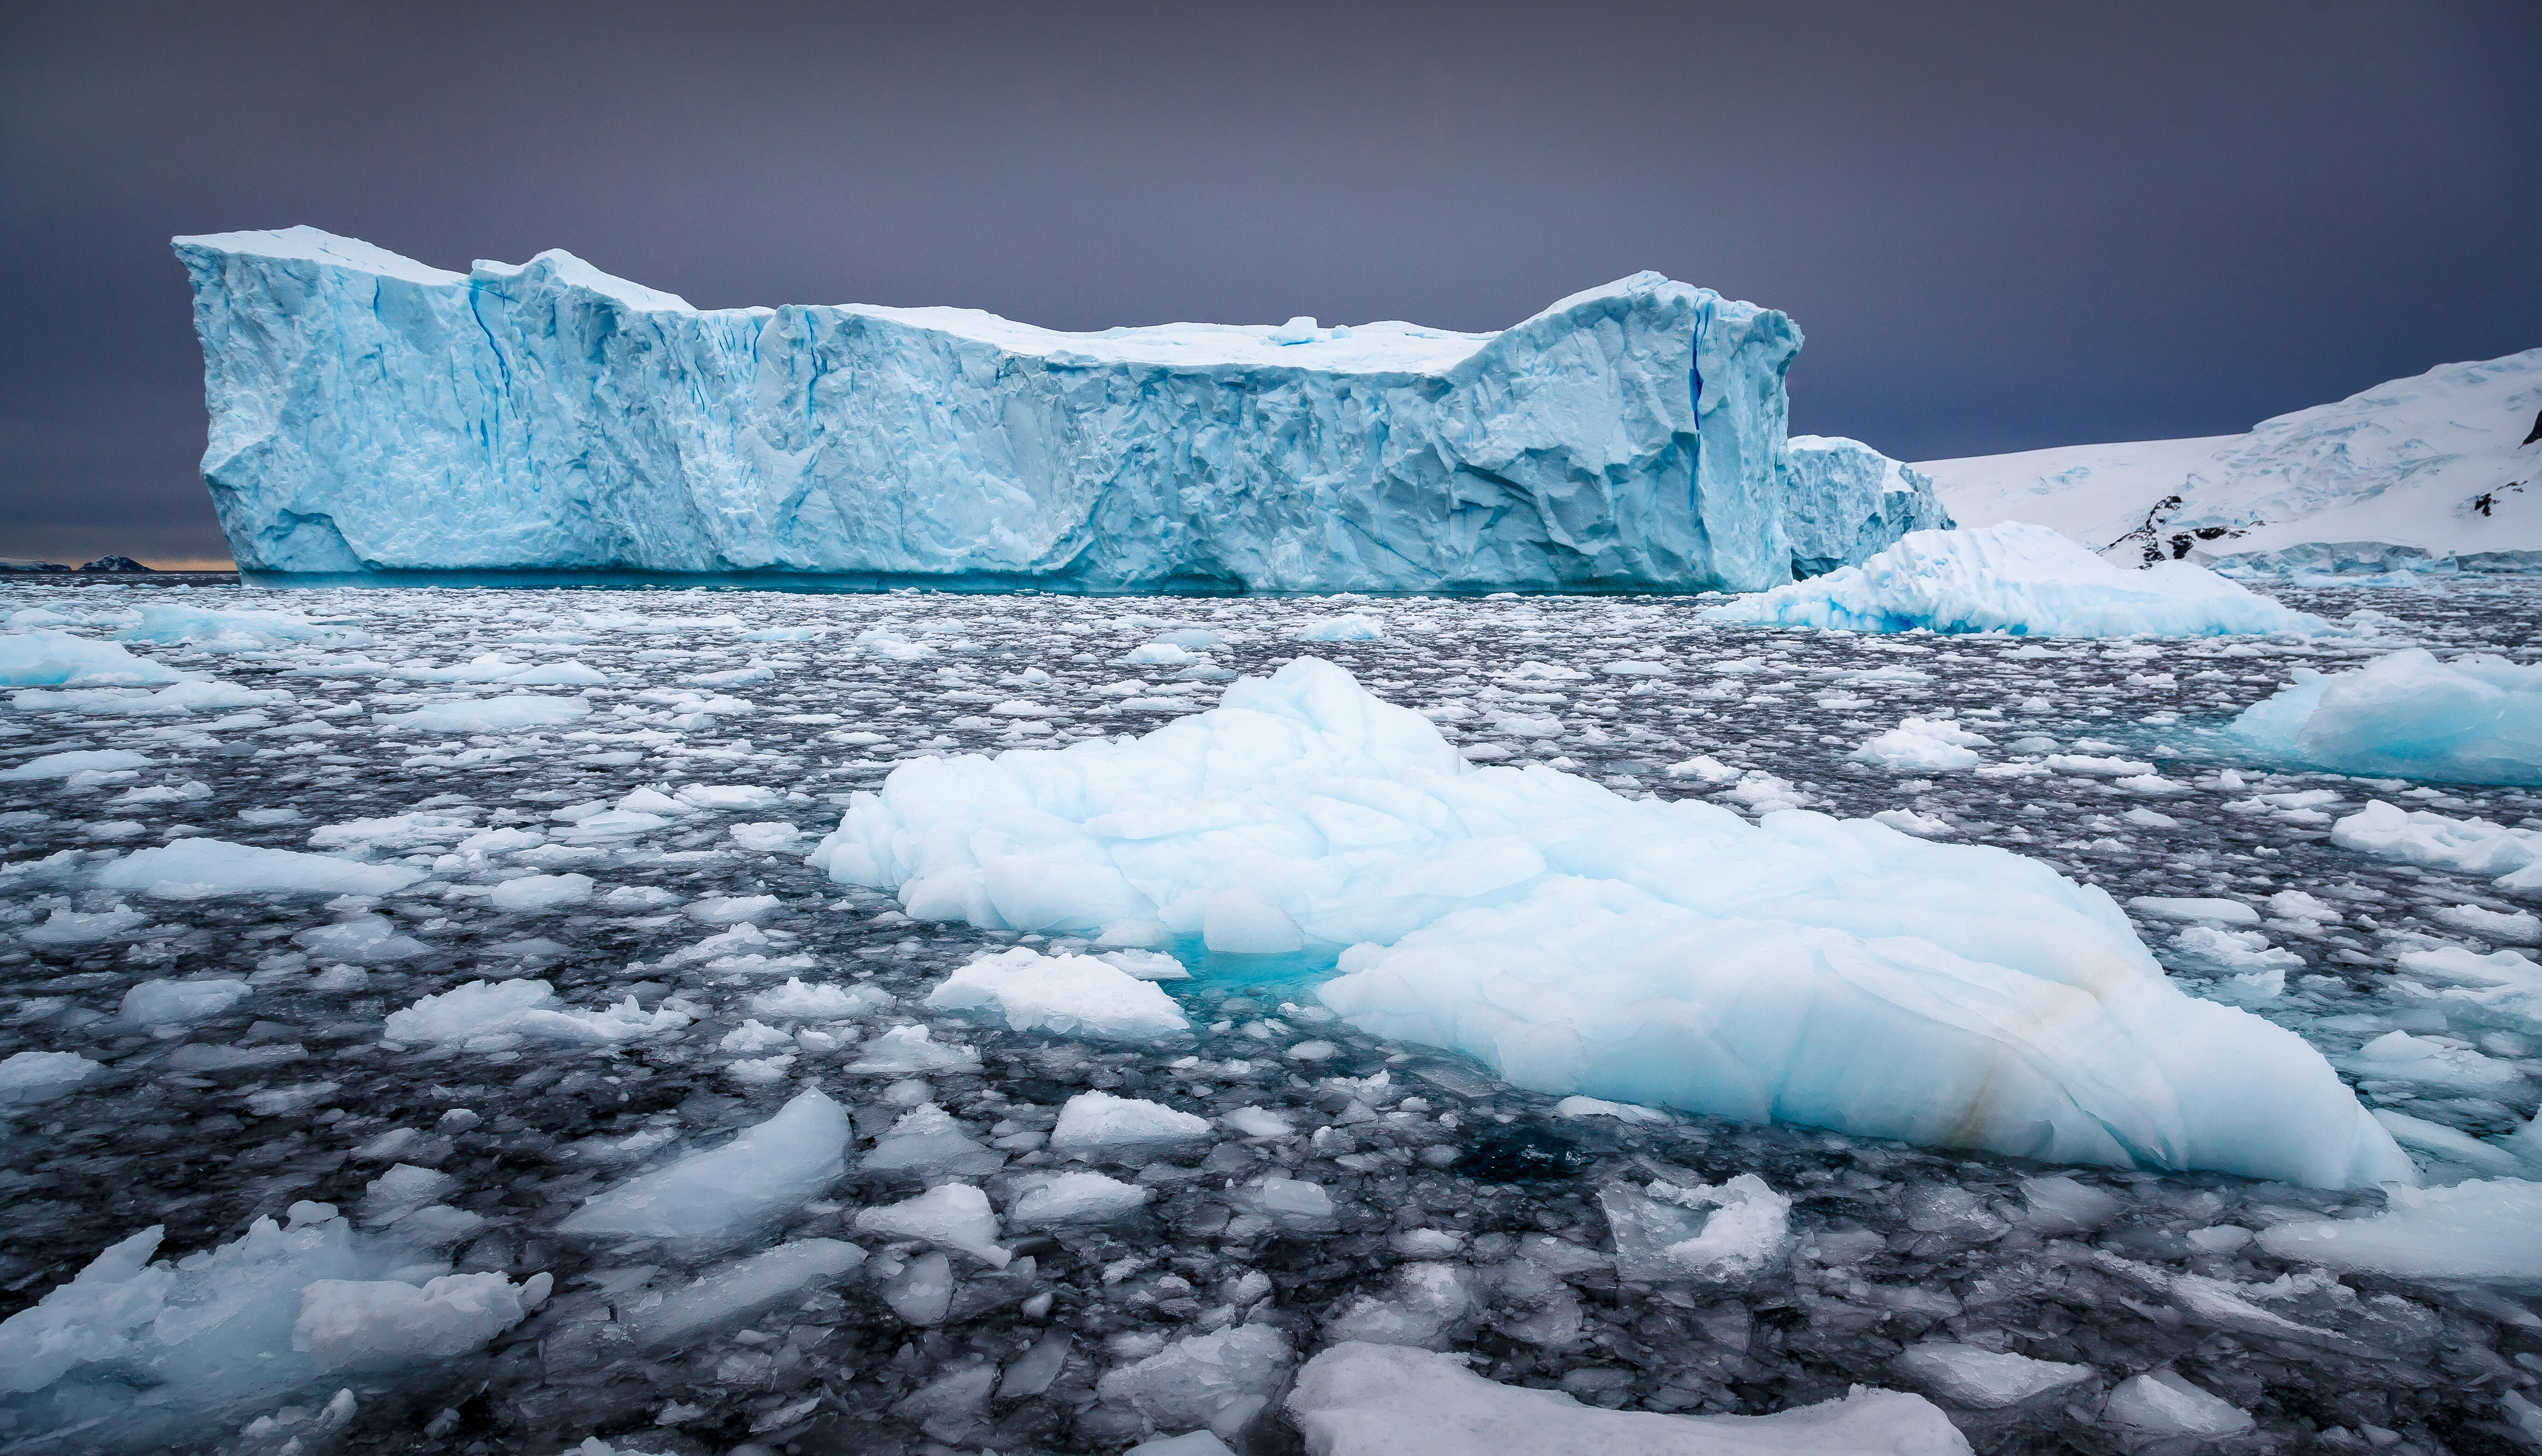 Ледник академии наук. Гренландия ледник Антарктида Арктика Гренландия. Арктика Антарктика Антарктида. Таяние ледников Антарктики. Антарктида Гренландия Арктика Северный Ледовитый океан.